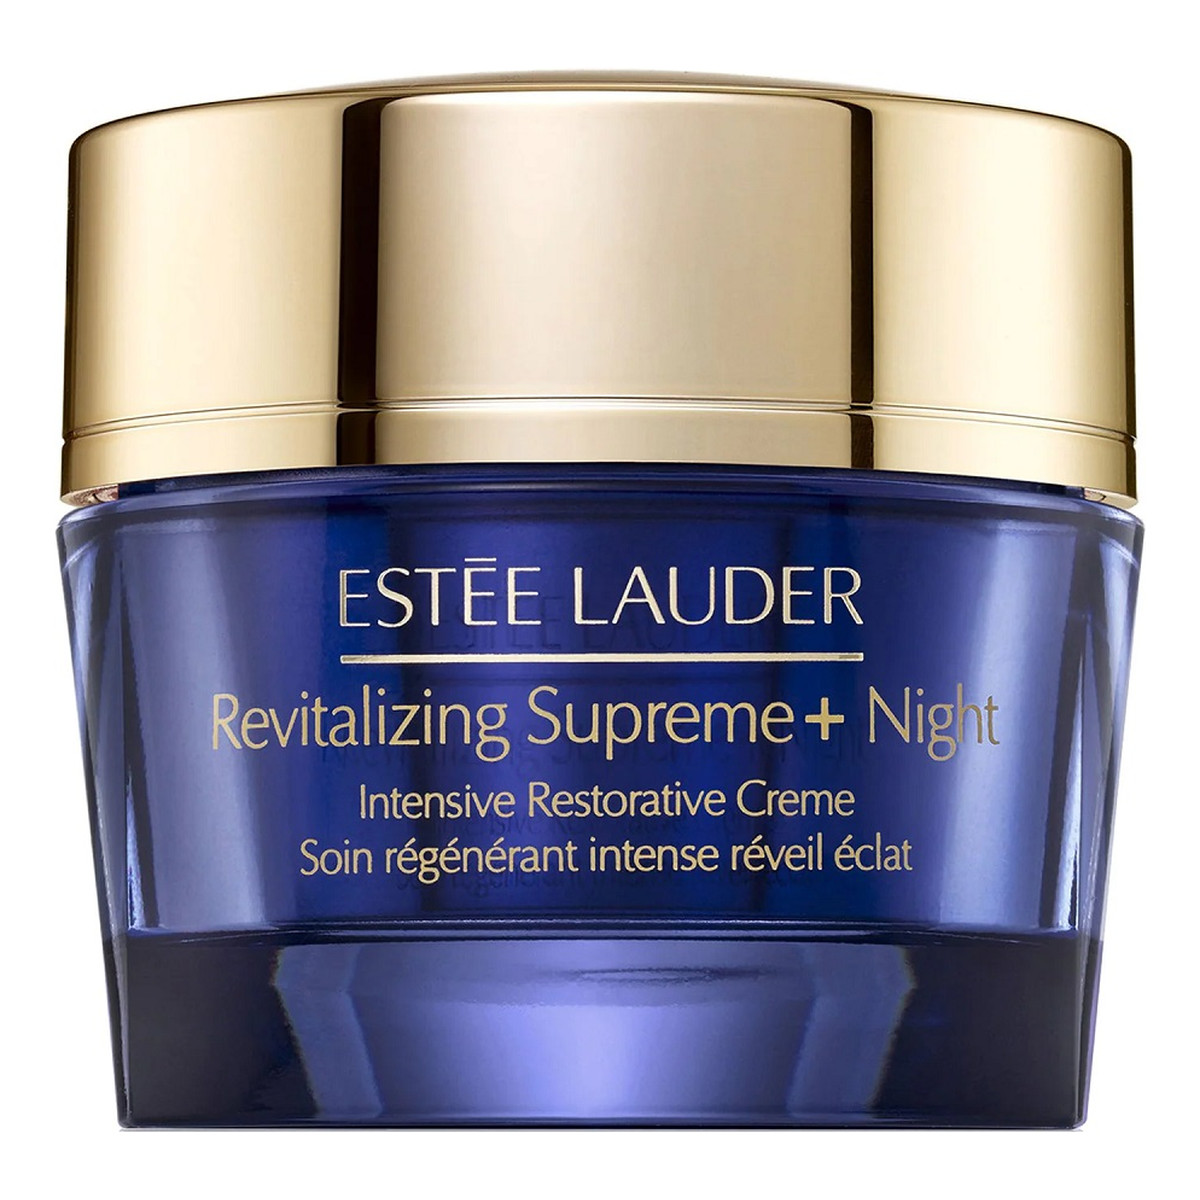 Estee Lauder Revitalizing Supreme+ Night Intensive Restorative Creme rewitalizujący krem przeciwzmarszczkowy na noc 50ml